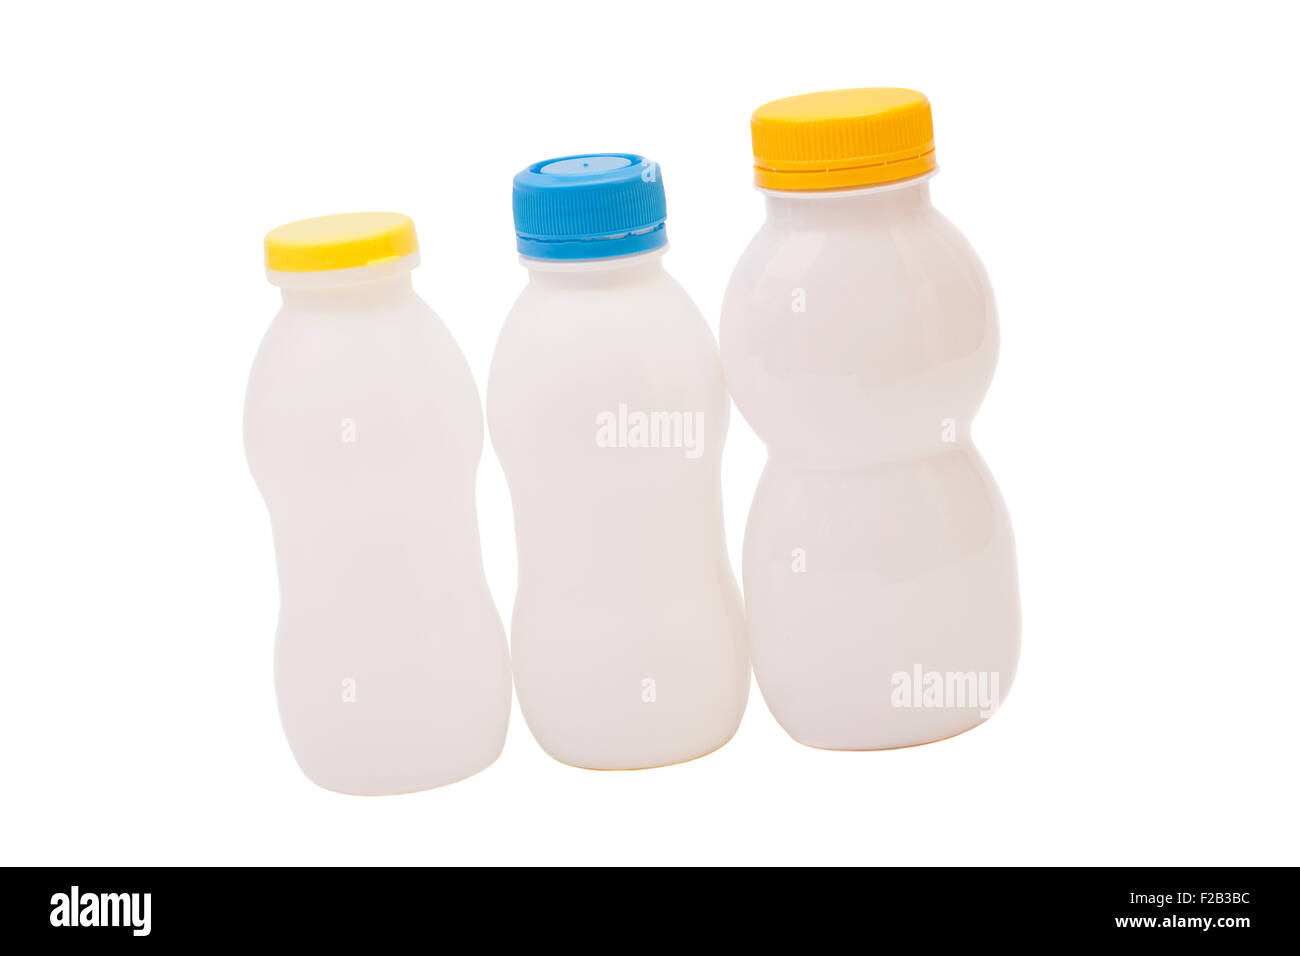 Les bouteilles de boisson au yogourt biotiques isolé sur fond blanc Banque D'Images